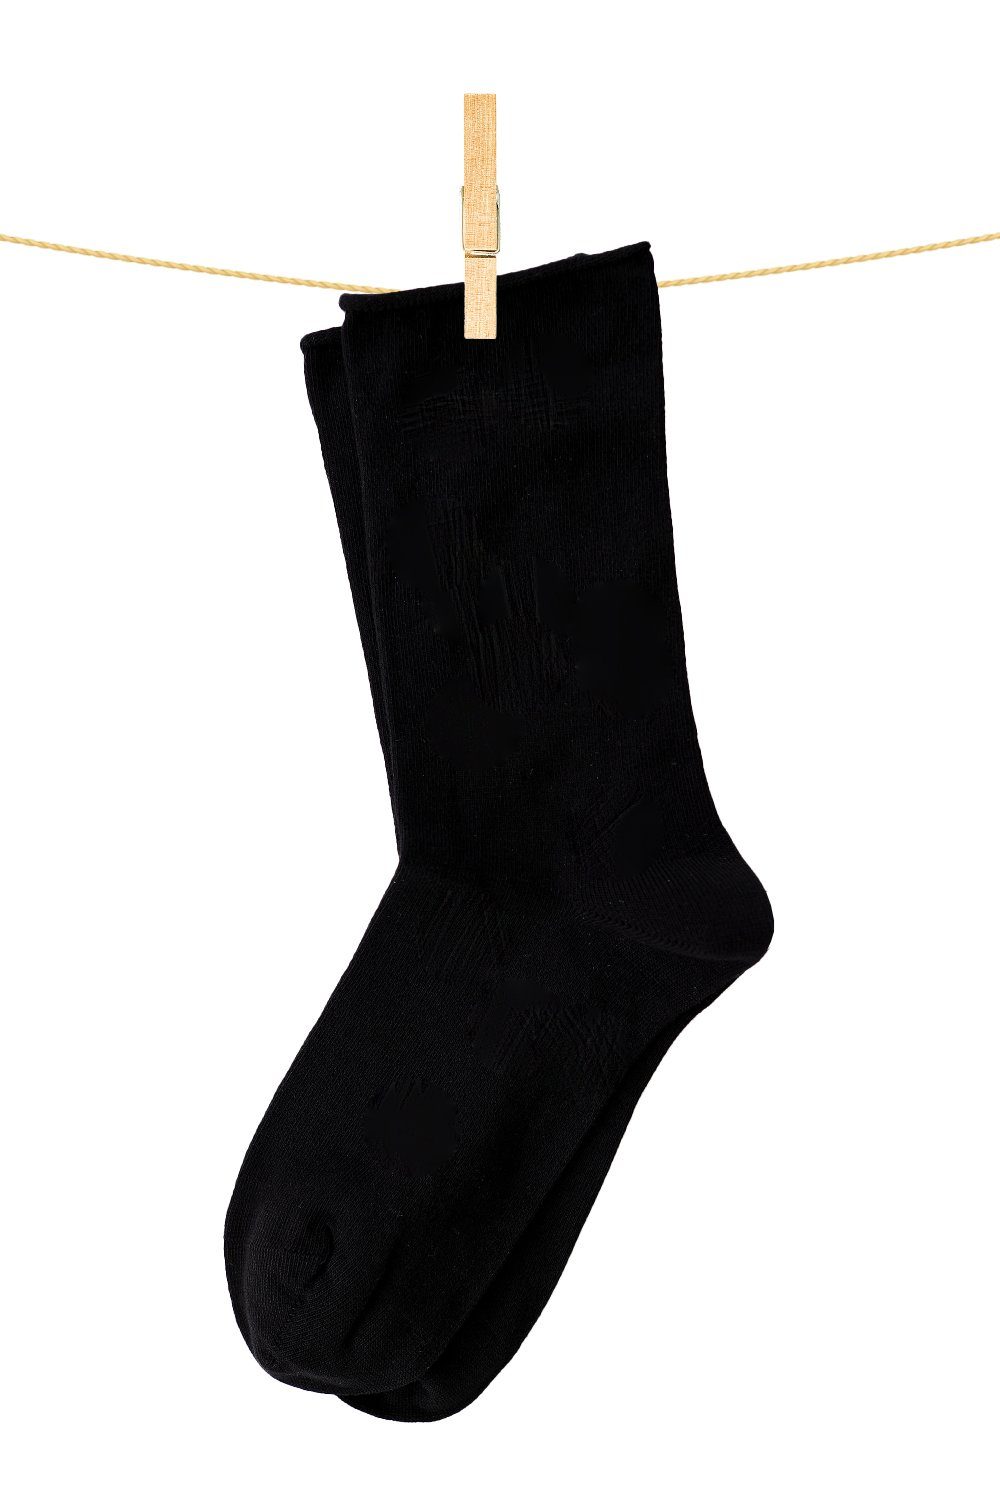 Crönert Socken Longsocks Uni 18600 schwarz